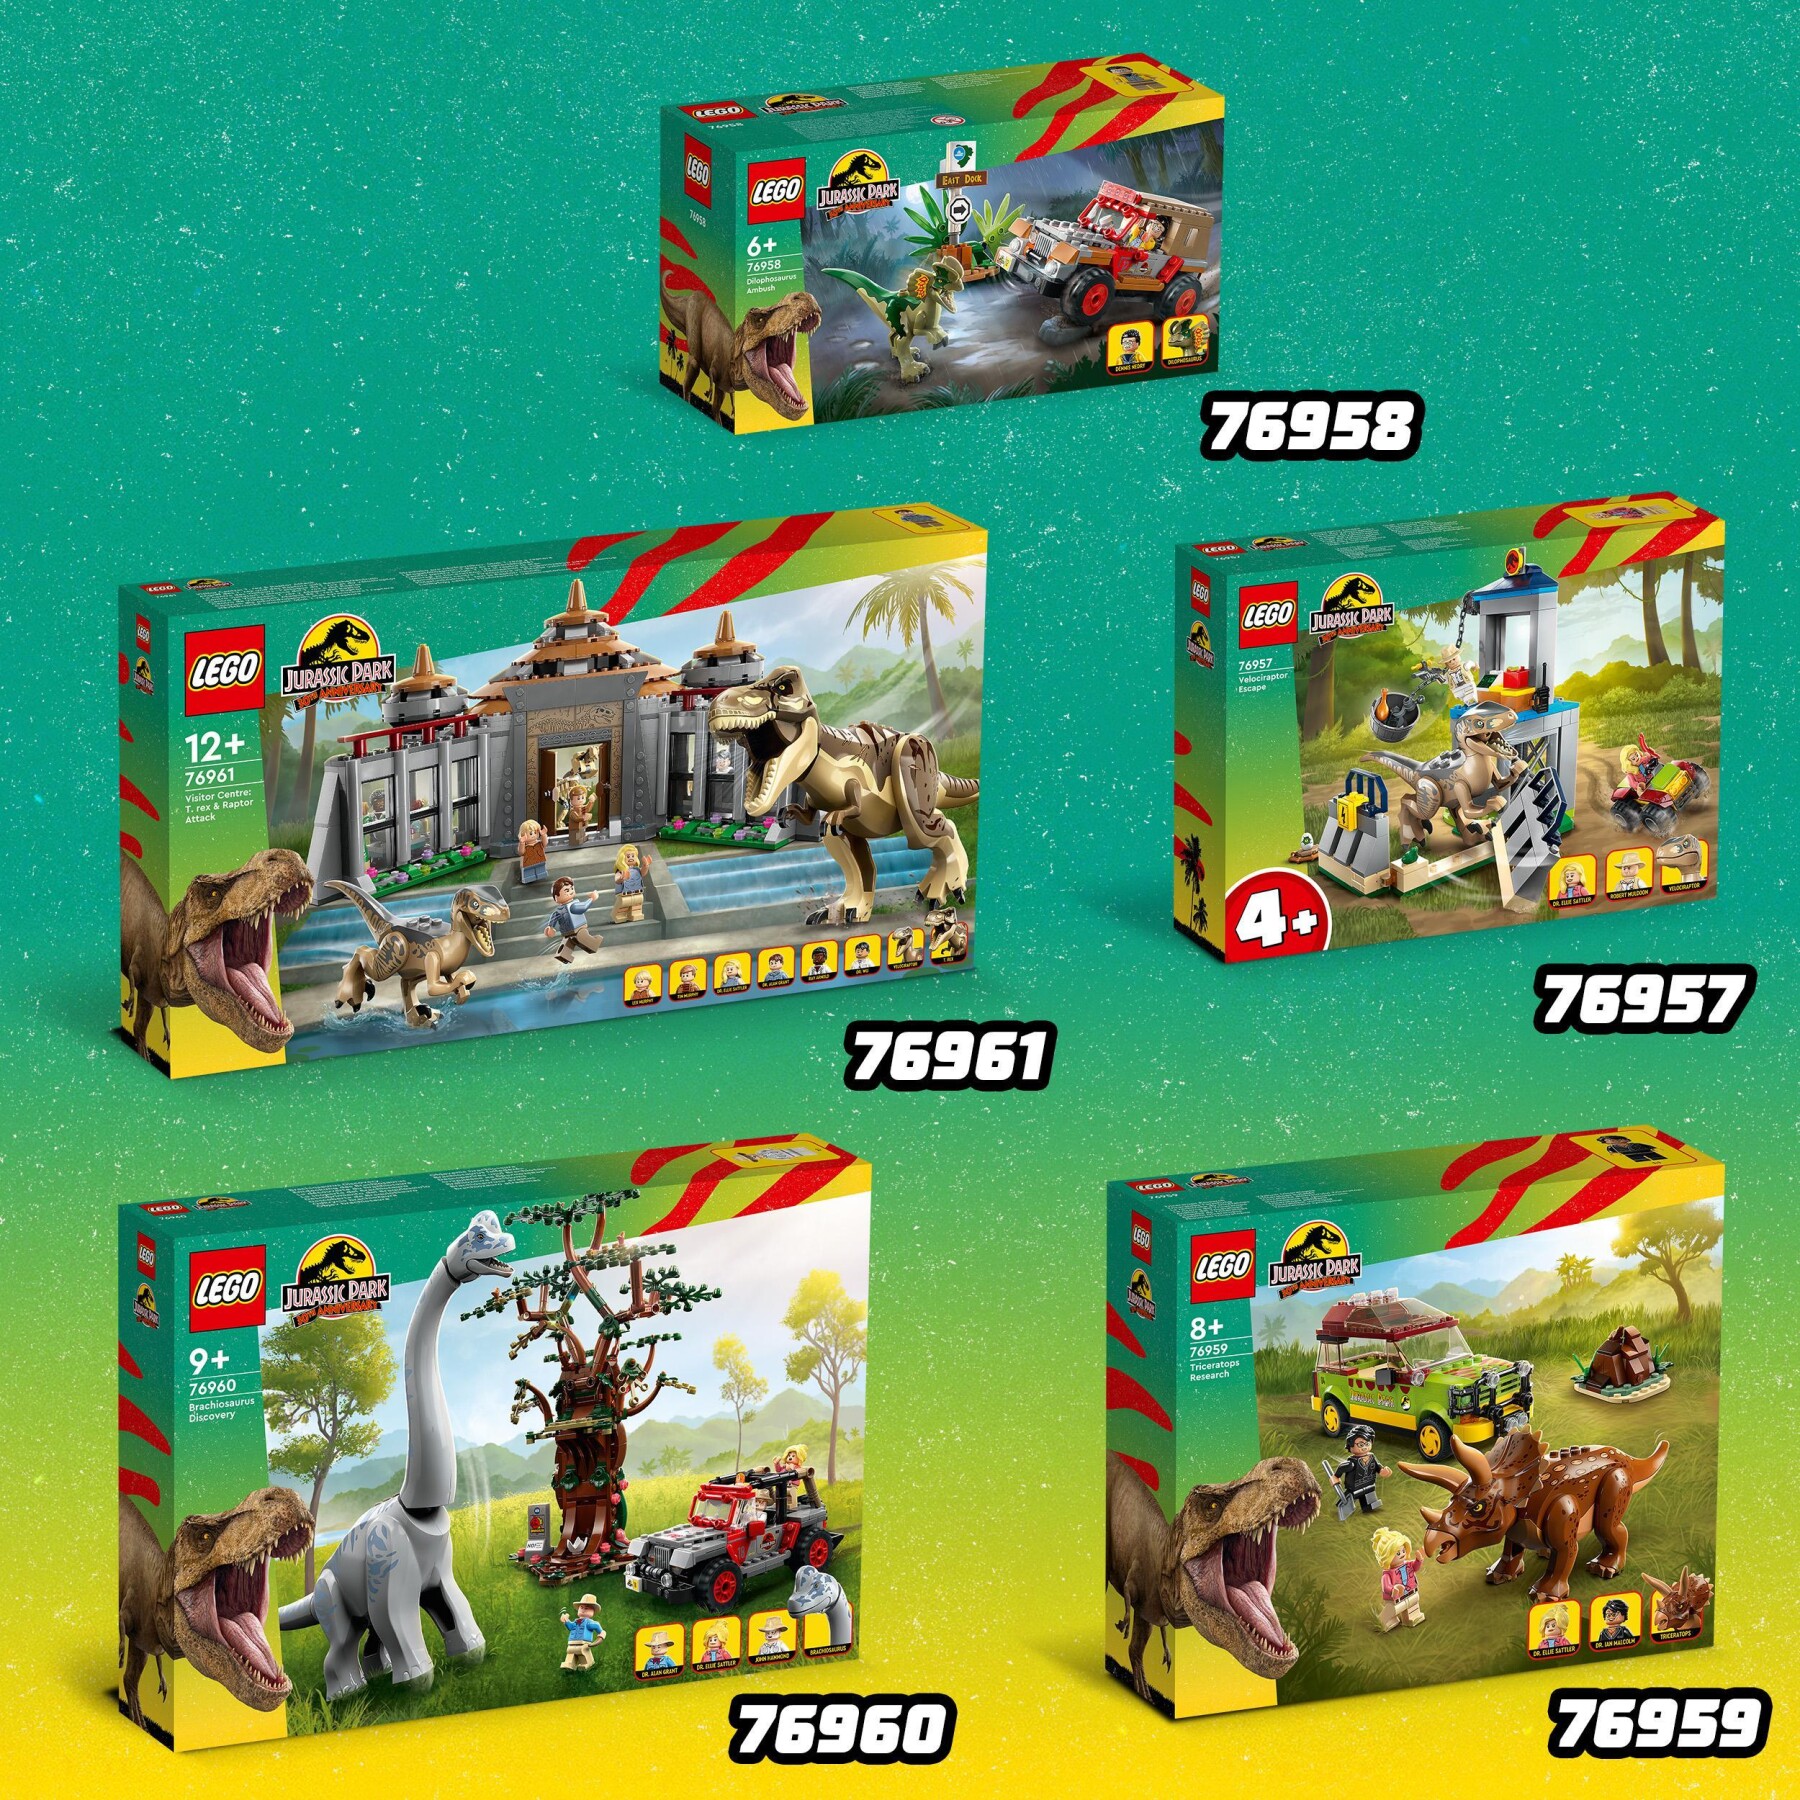 Lego jurassic park 76958 l’agguato del dilofosauro, dinosauro giocattolo per bambini 6+ con jeep, collezione 30° anniversario - Jurassic World, LEGO JURASSIC PARK/W